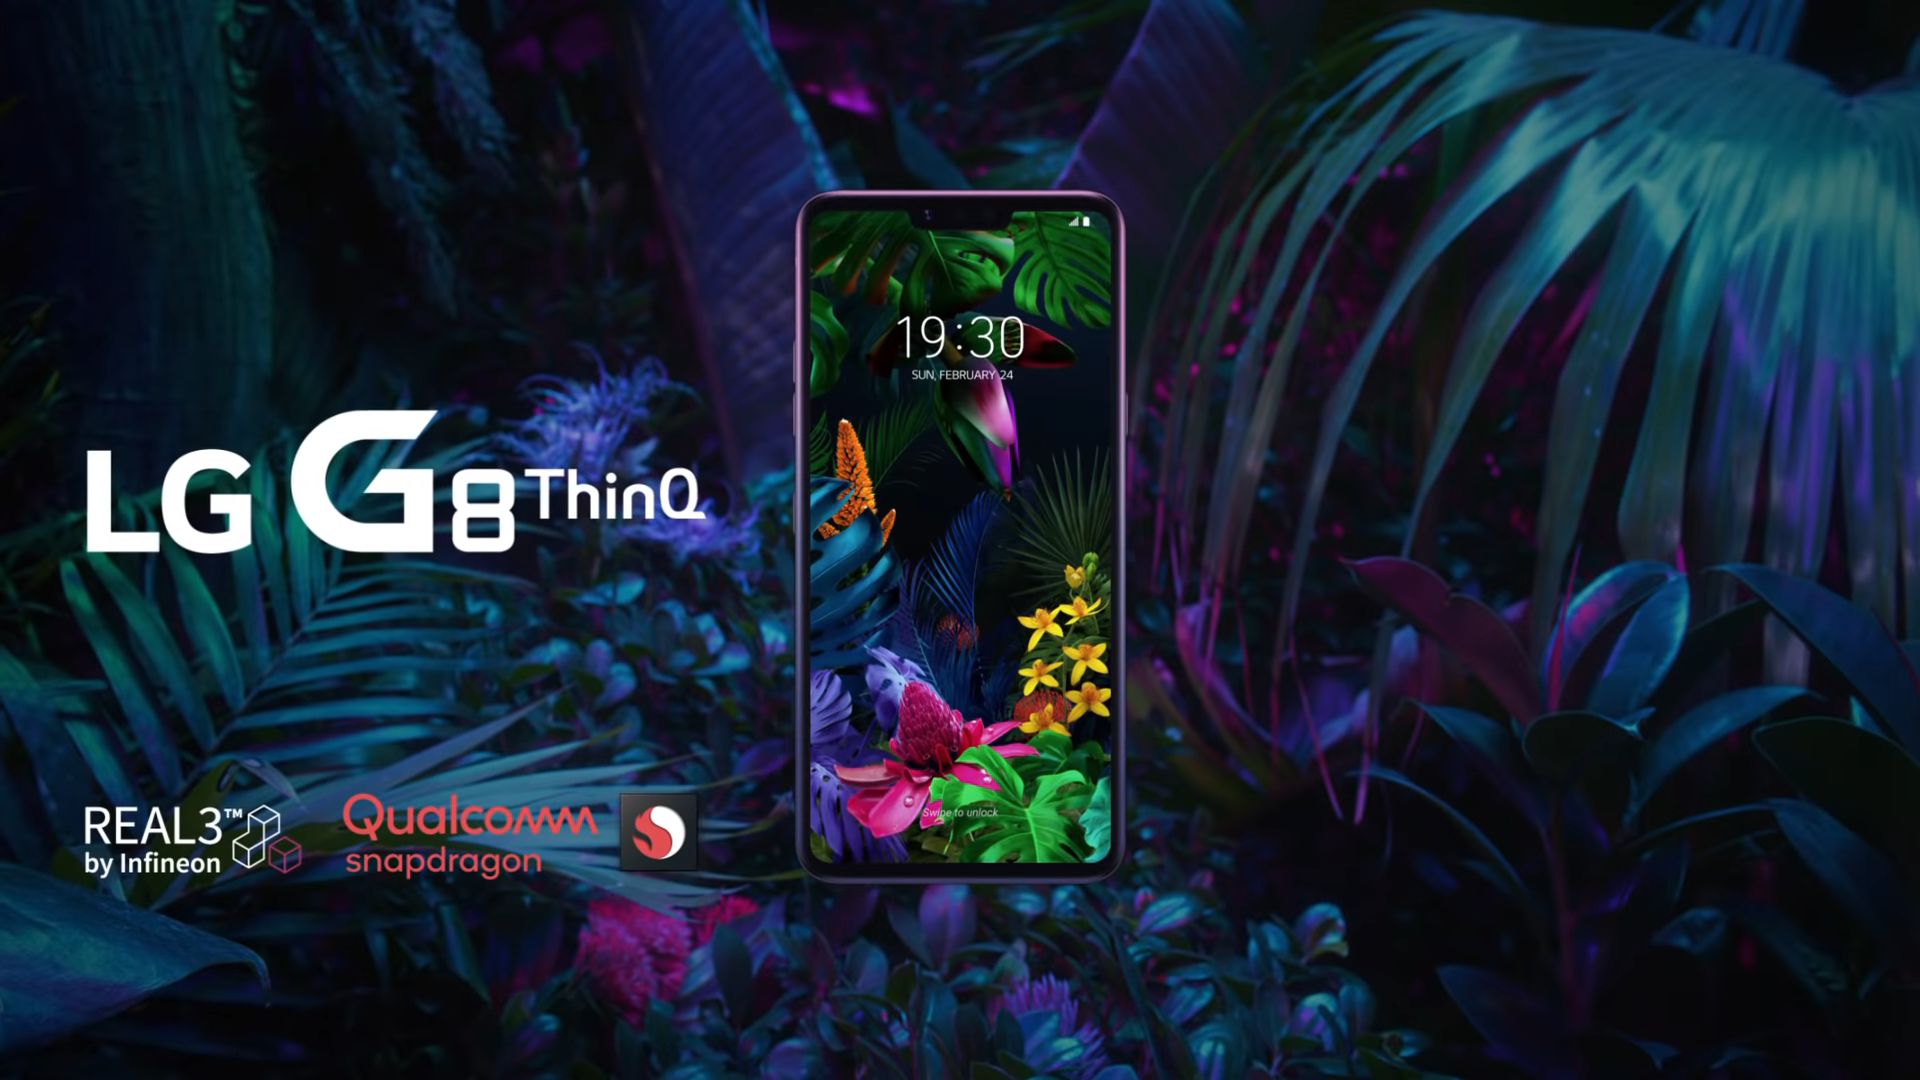 LG G8s presentato ufficialmente: lo smartphone top di gamma con Hand ID (riconoscimento delle vene per lo sblocco)